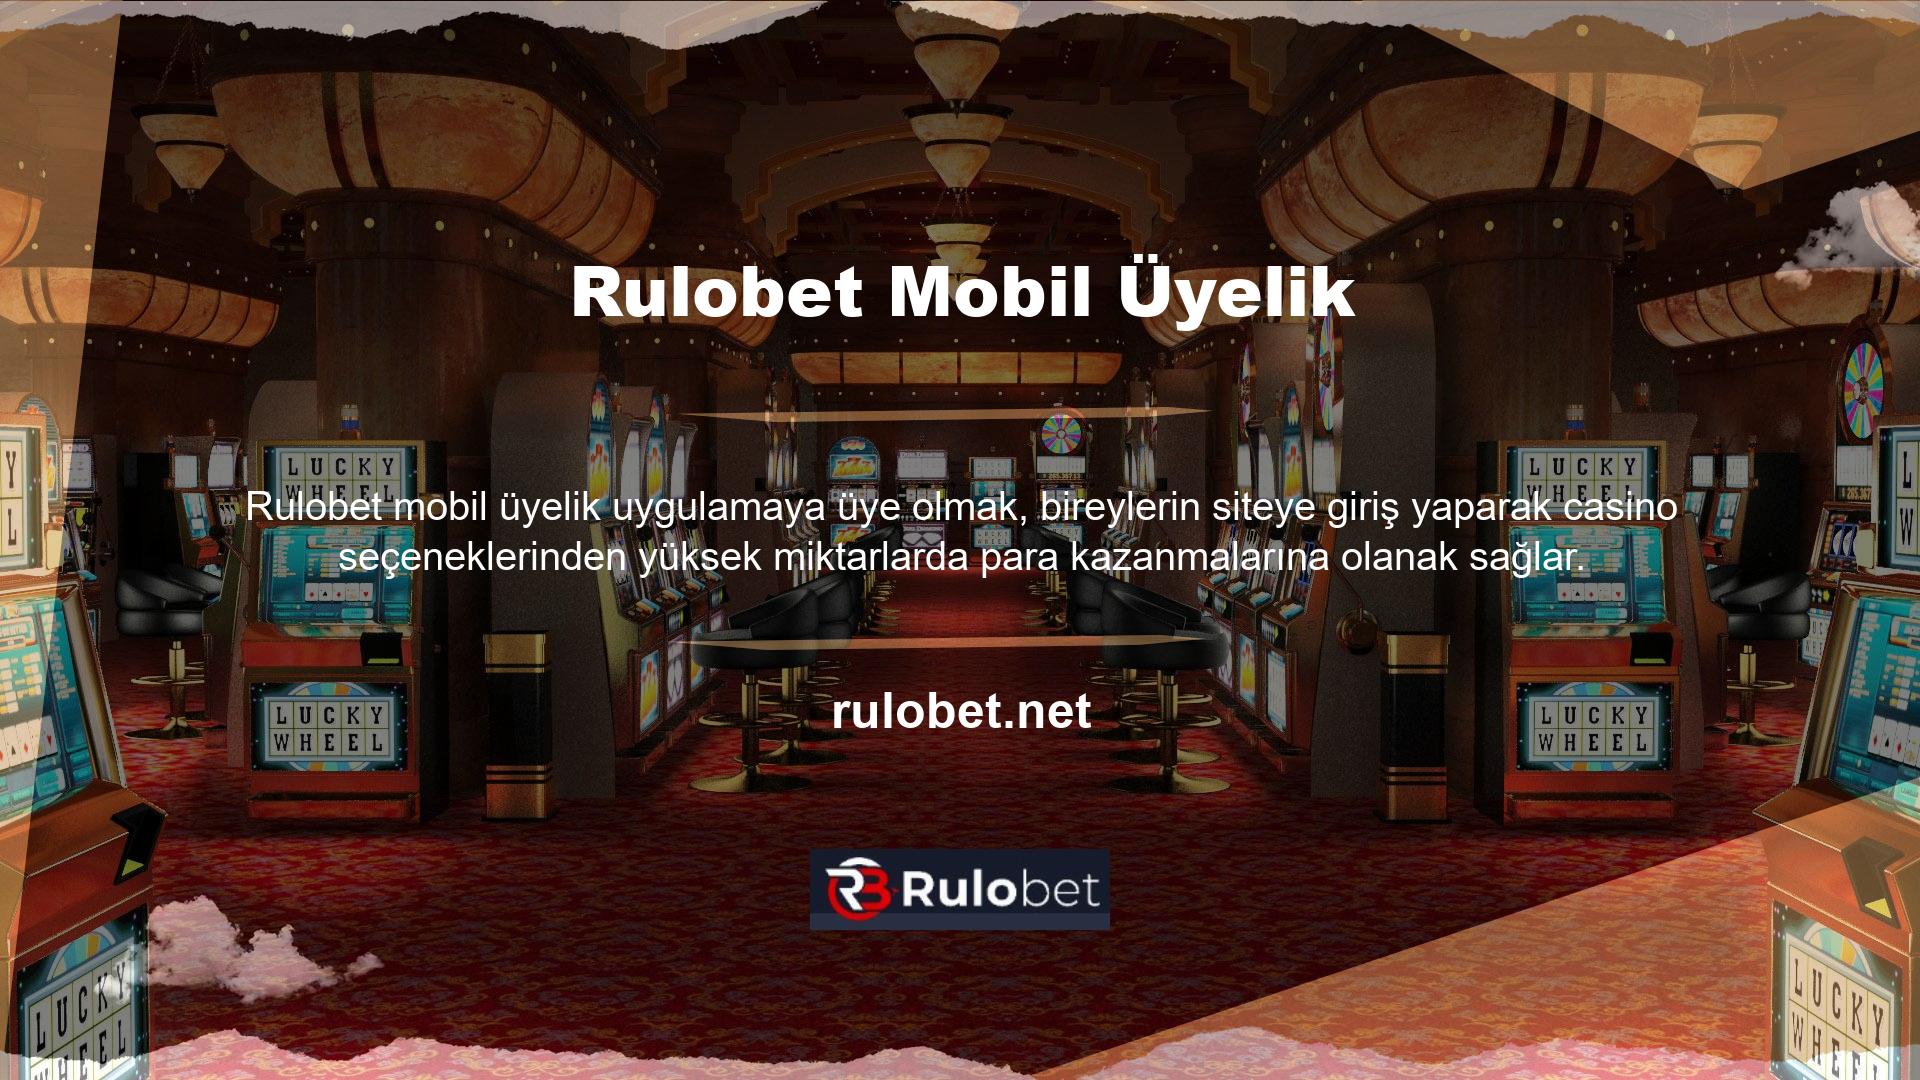 Rulobet mobil üyelik tavla heyecanı sitesi, mobil uygulaması aracılığıyla kayıtlı oyunculara cömert casino bonusları sunuyor